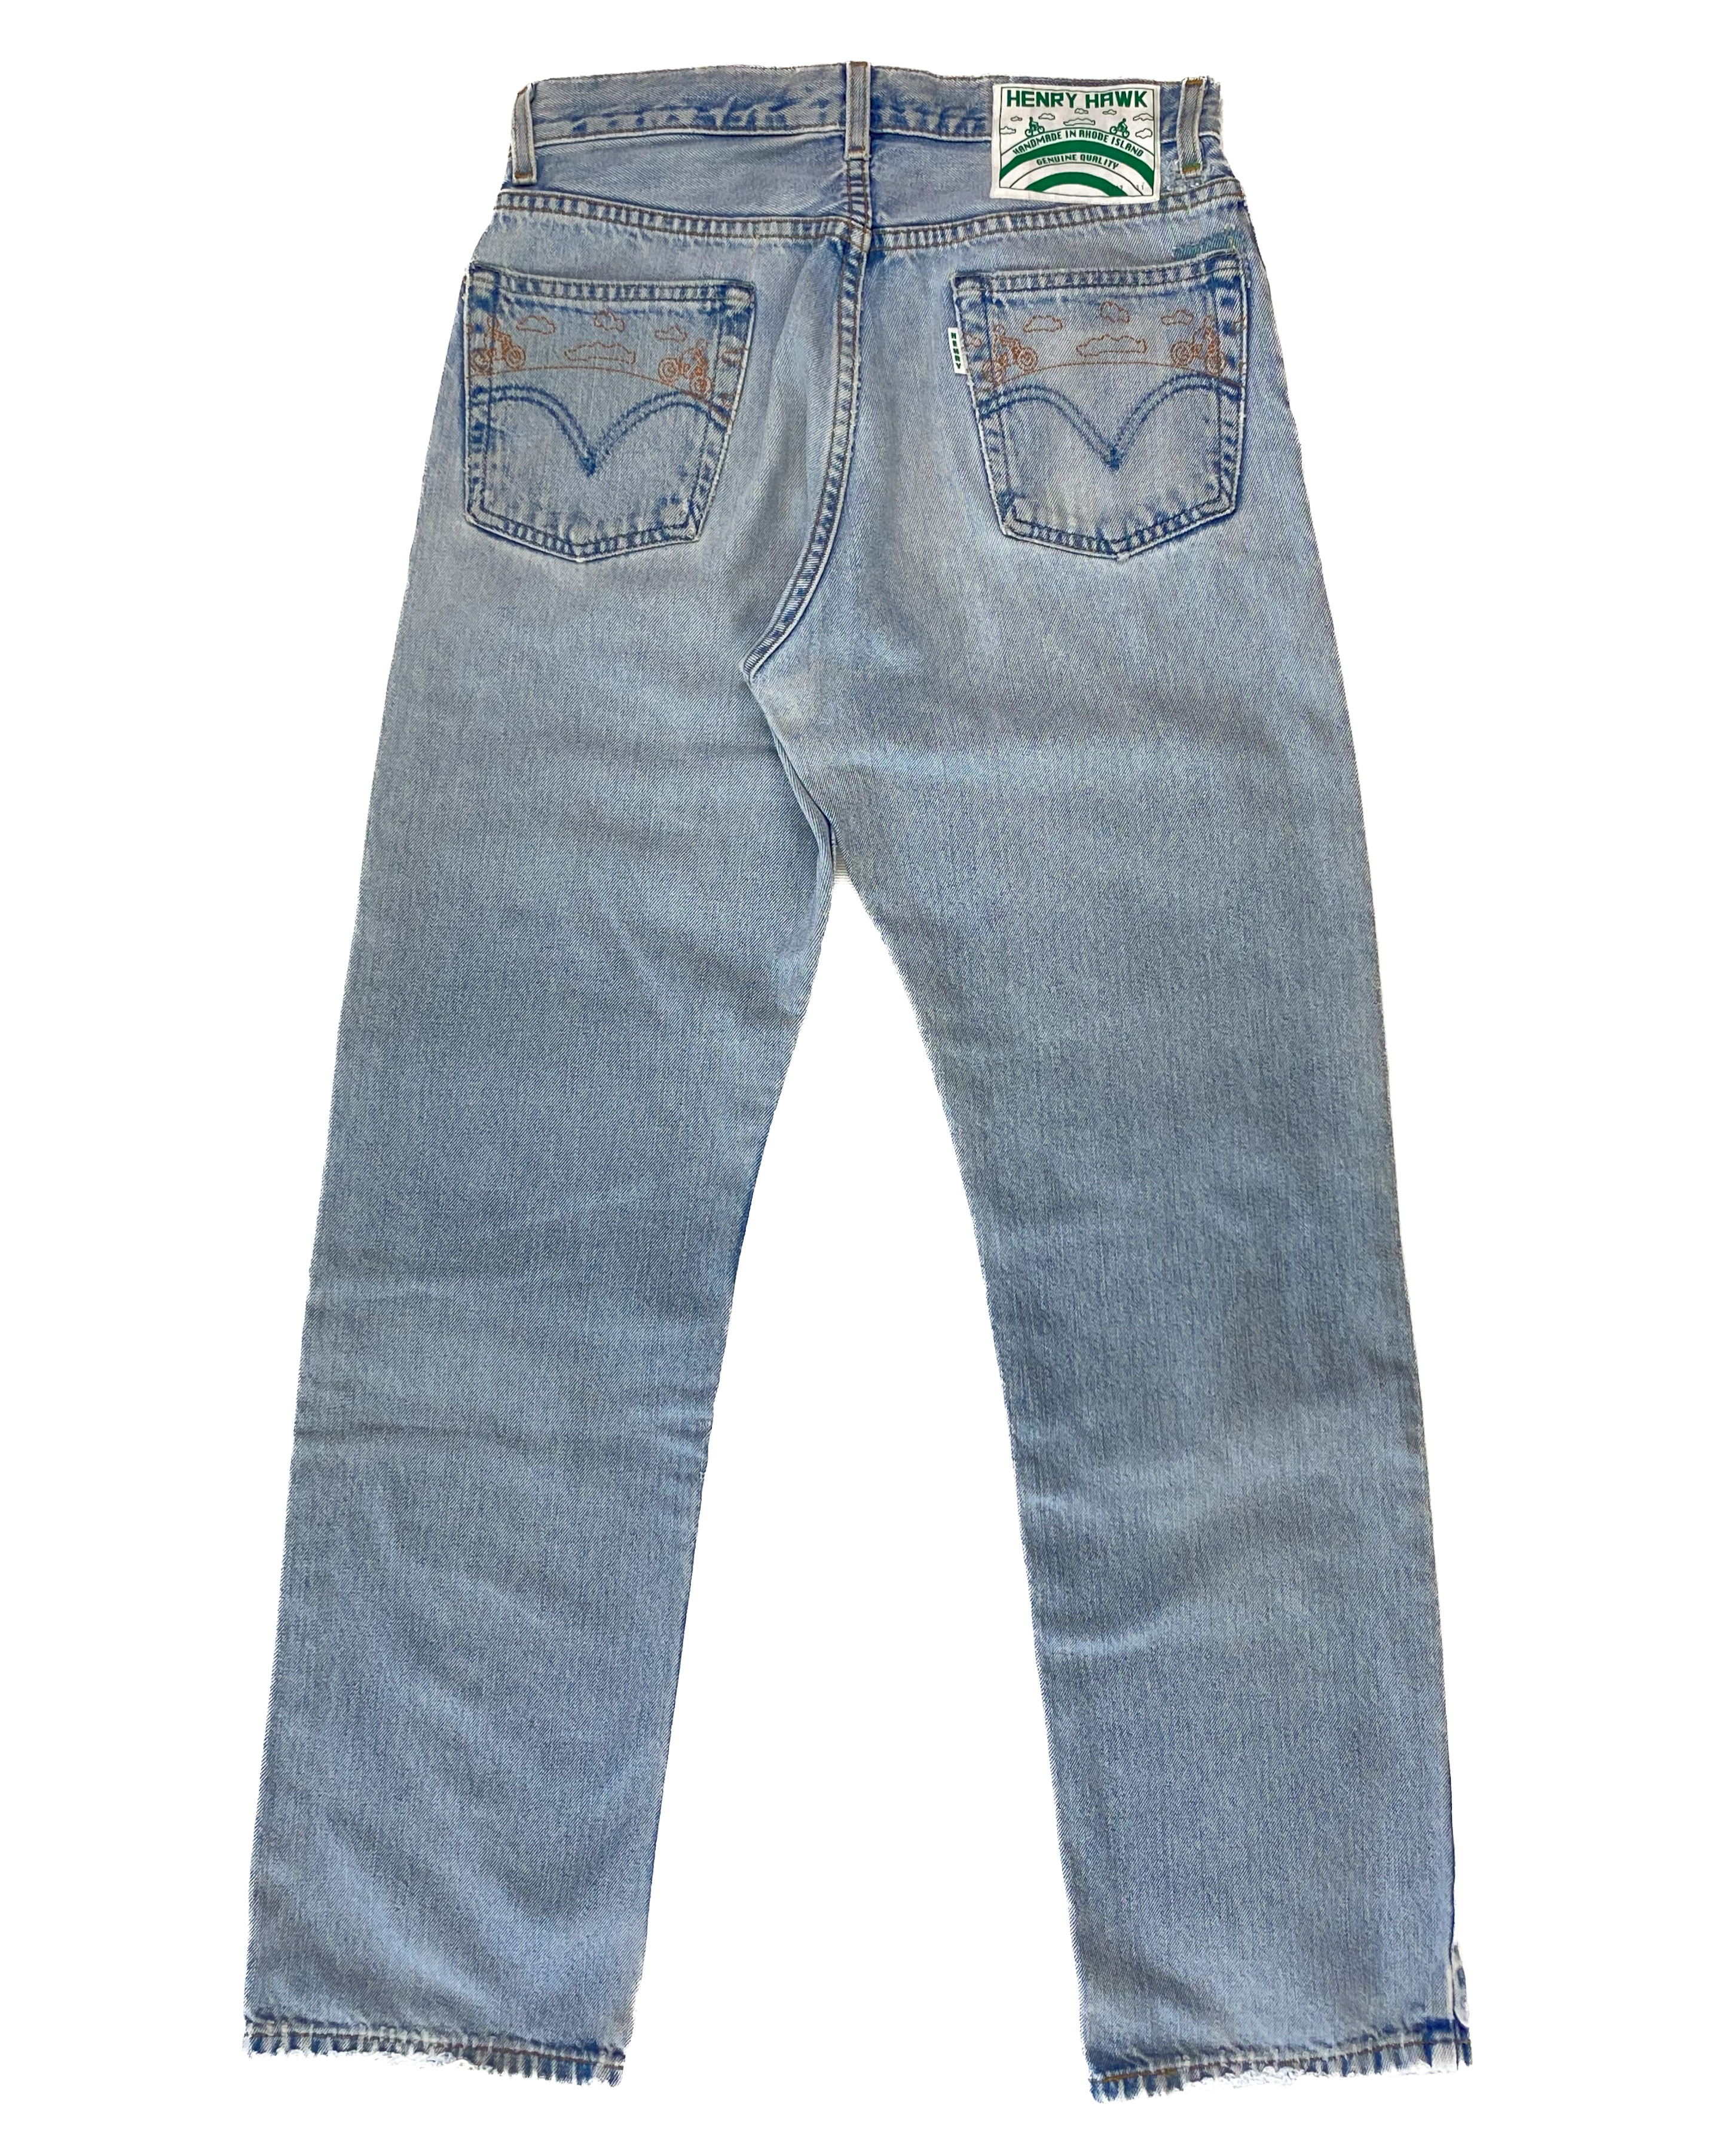 Hawk - Henry SHOP jeans Refurbished